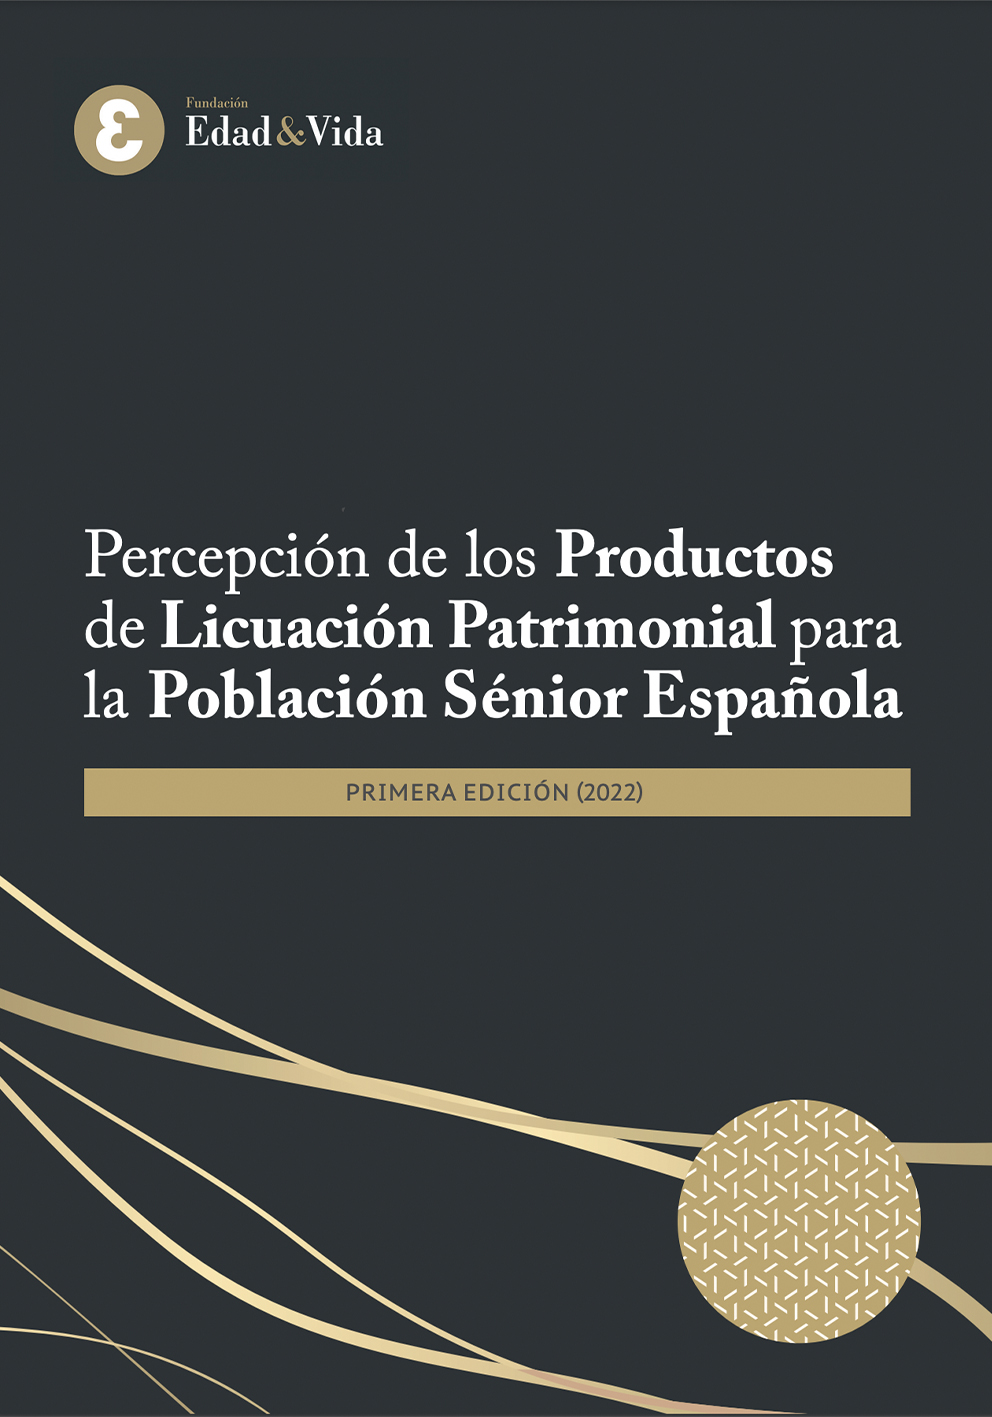 Percepción de los Productos de Licuación Patrimonial para la Población Sénior Española. Primera Edición (2022)